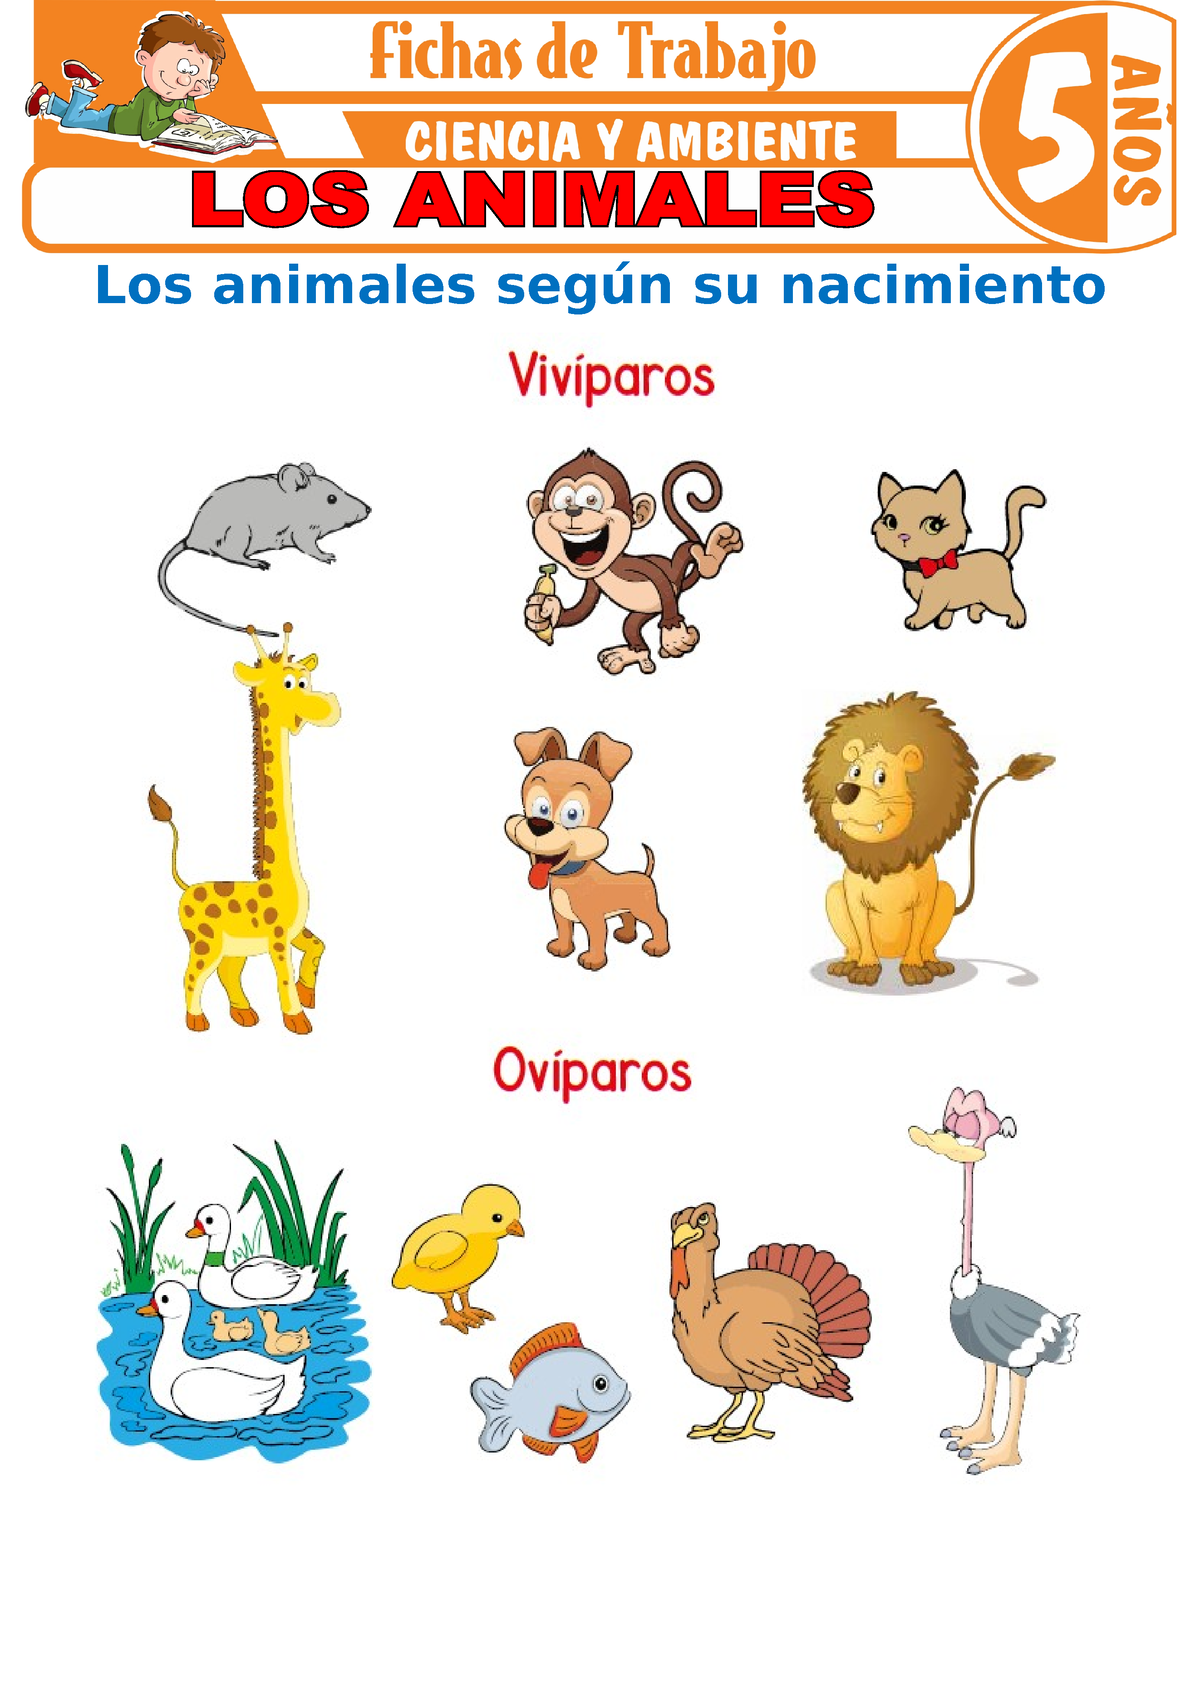 Los animales para Ninos de 5 anos - Los animales según su nacimiento  Hábitat de los animales Une los - Studocu